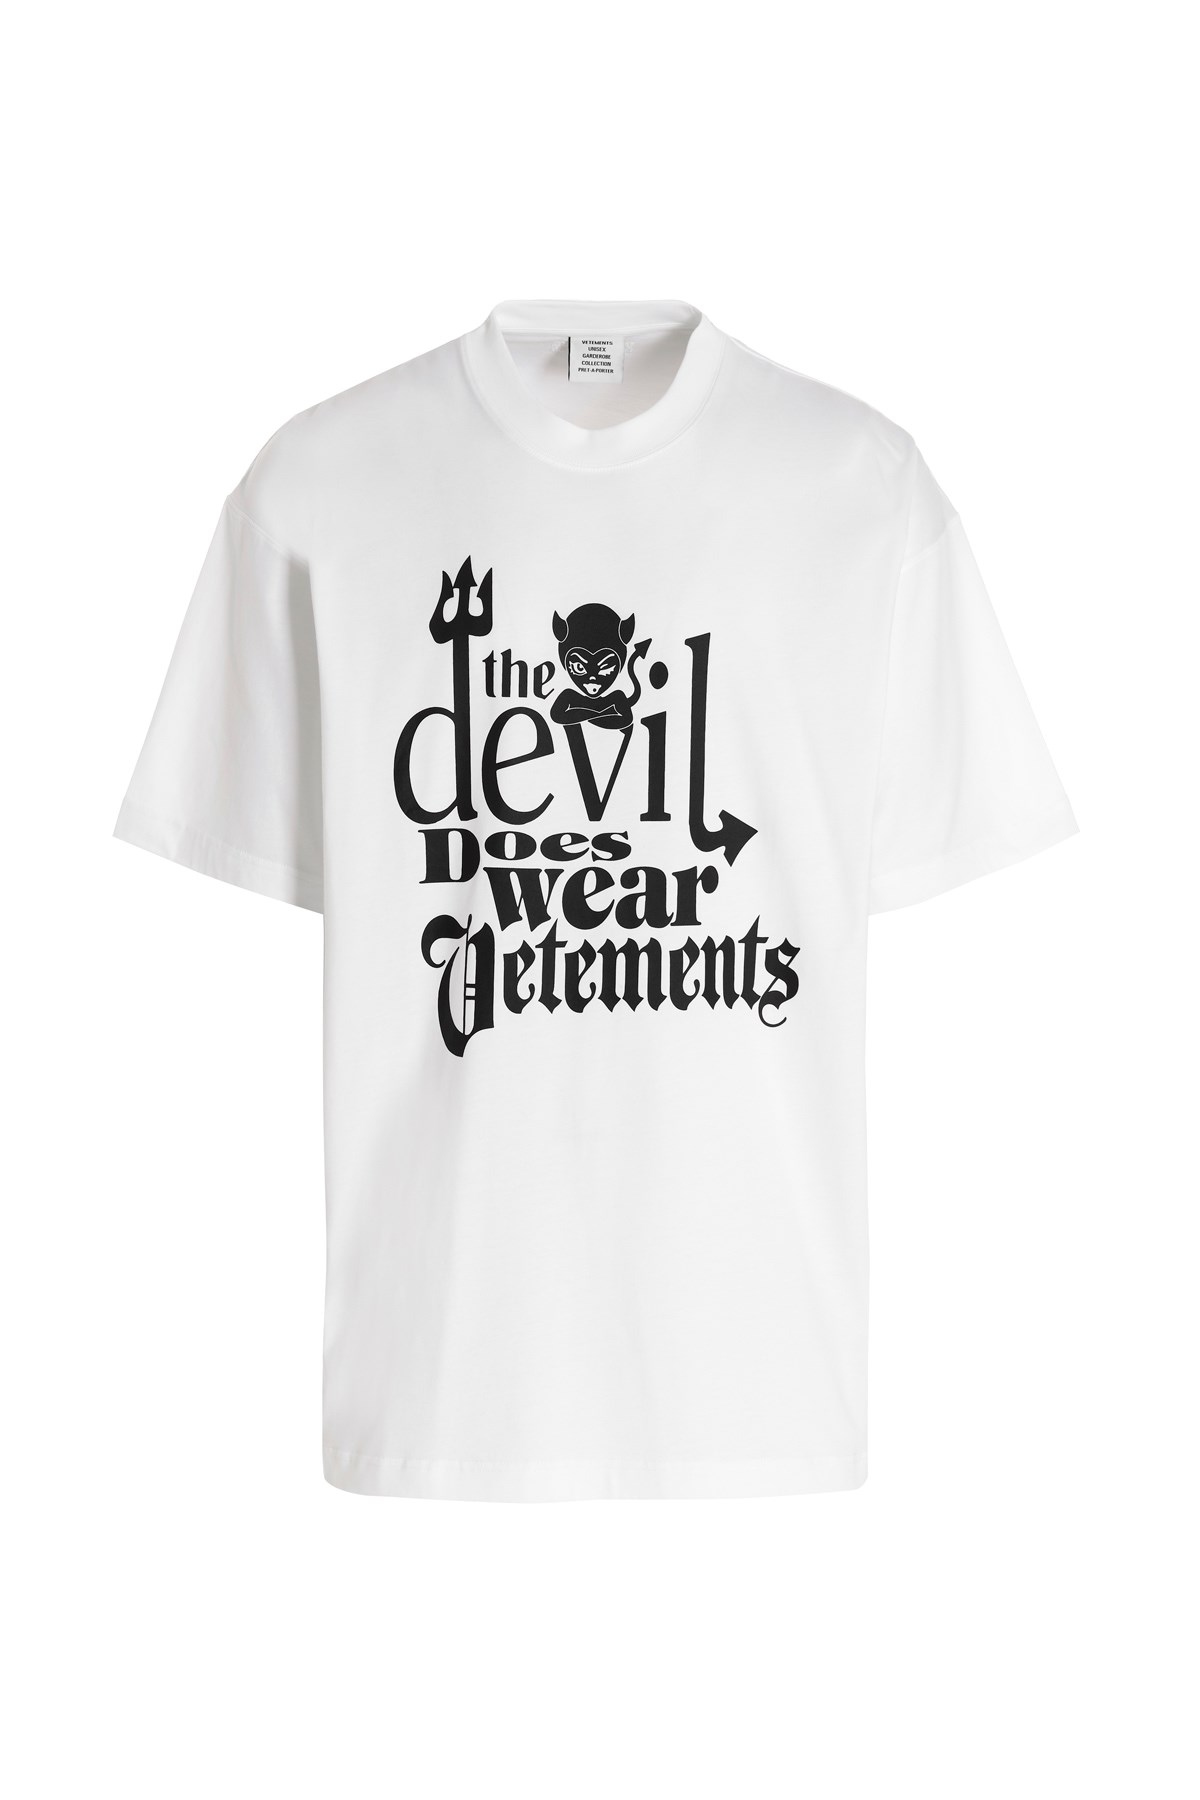 VETEMENTS T-Shirt 'Devil Does Wear Vetements'